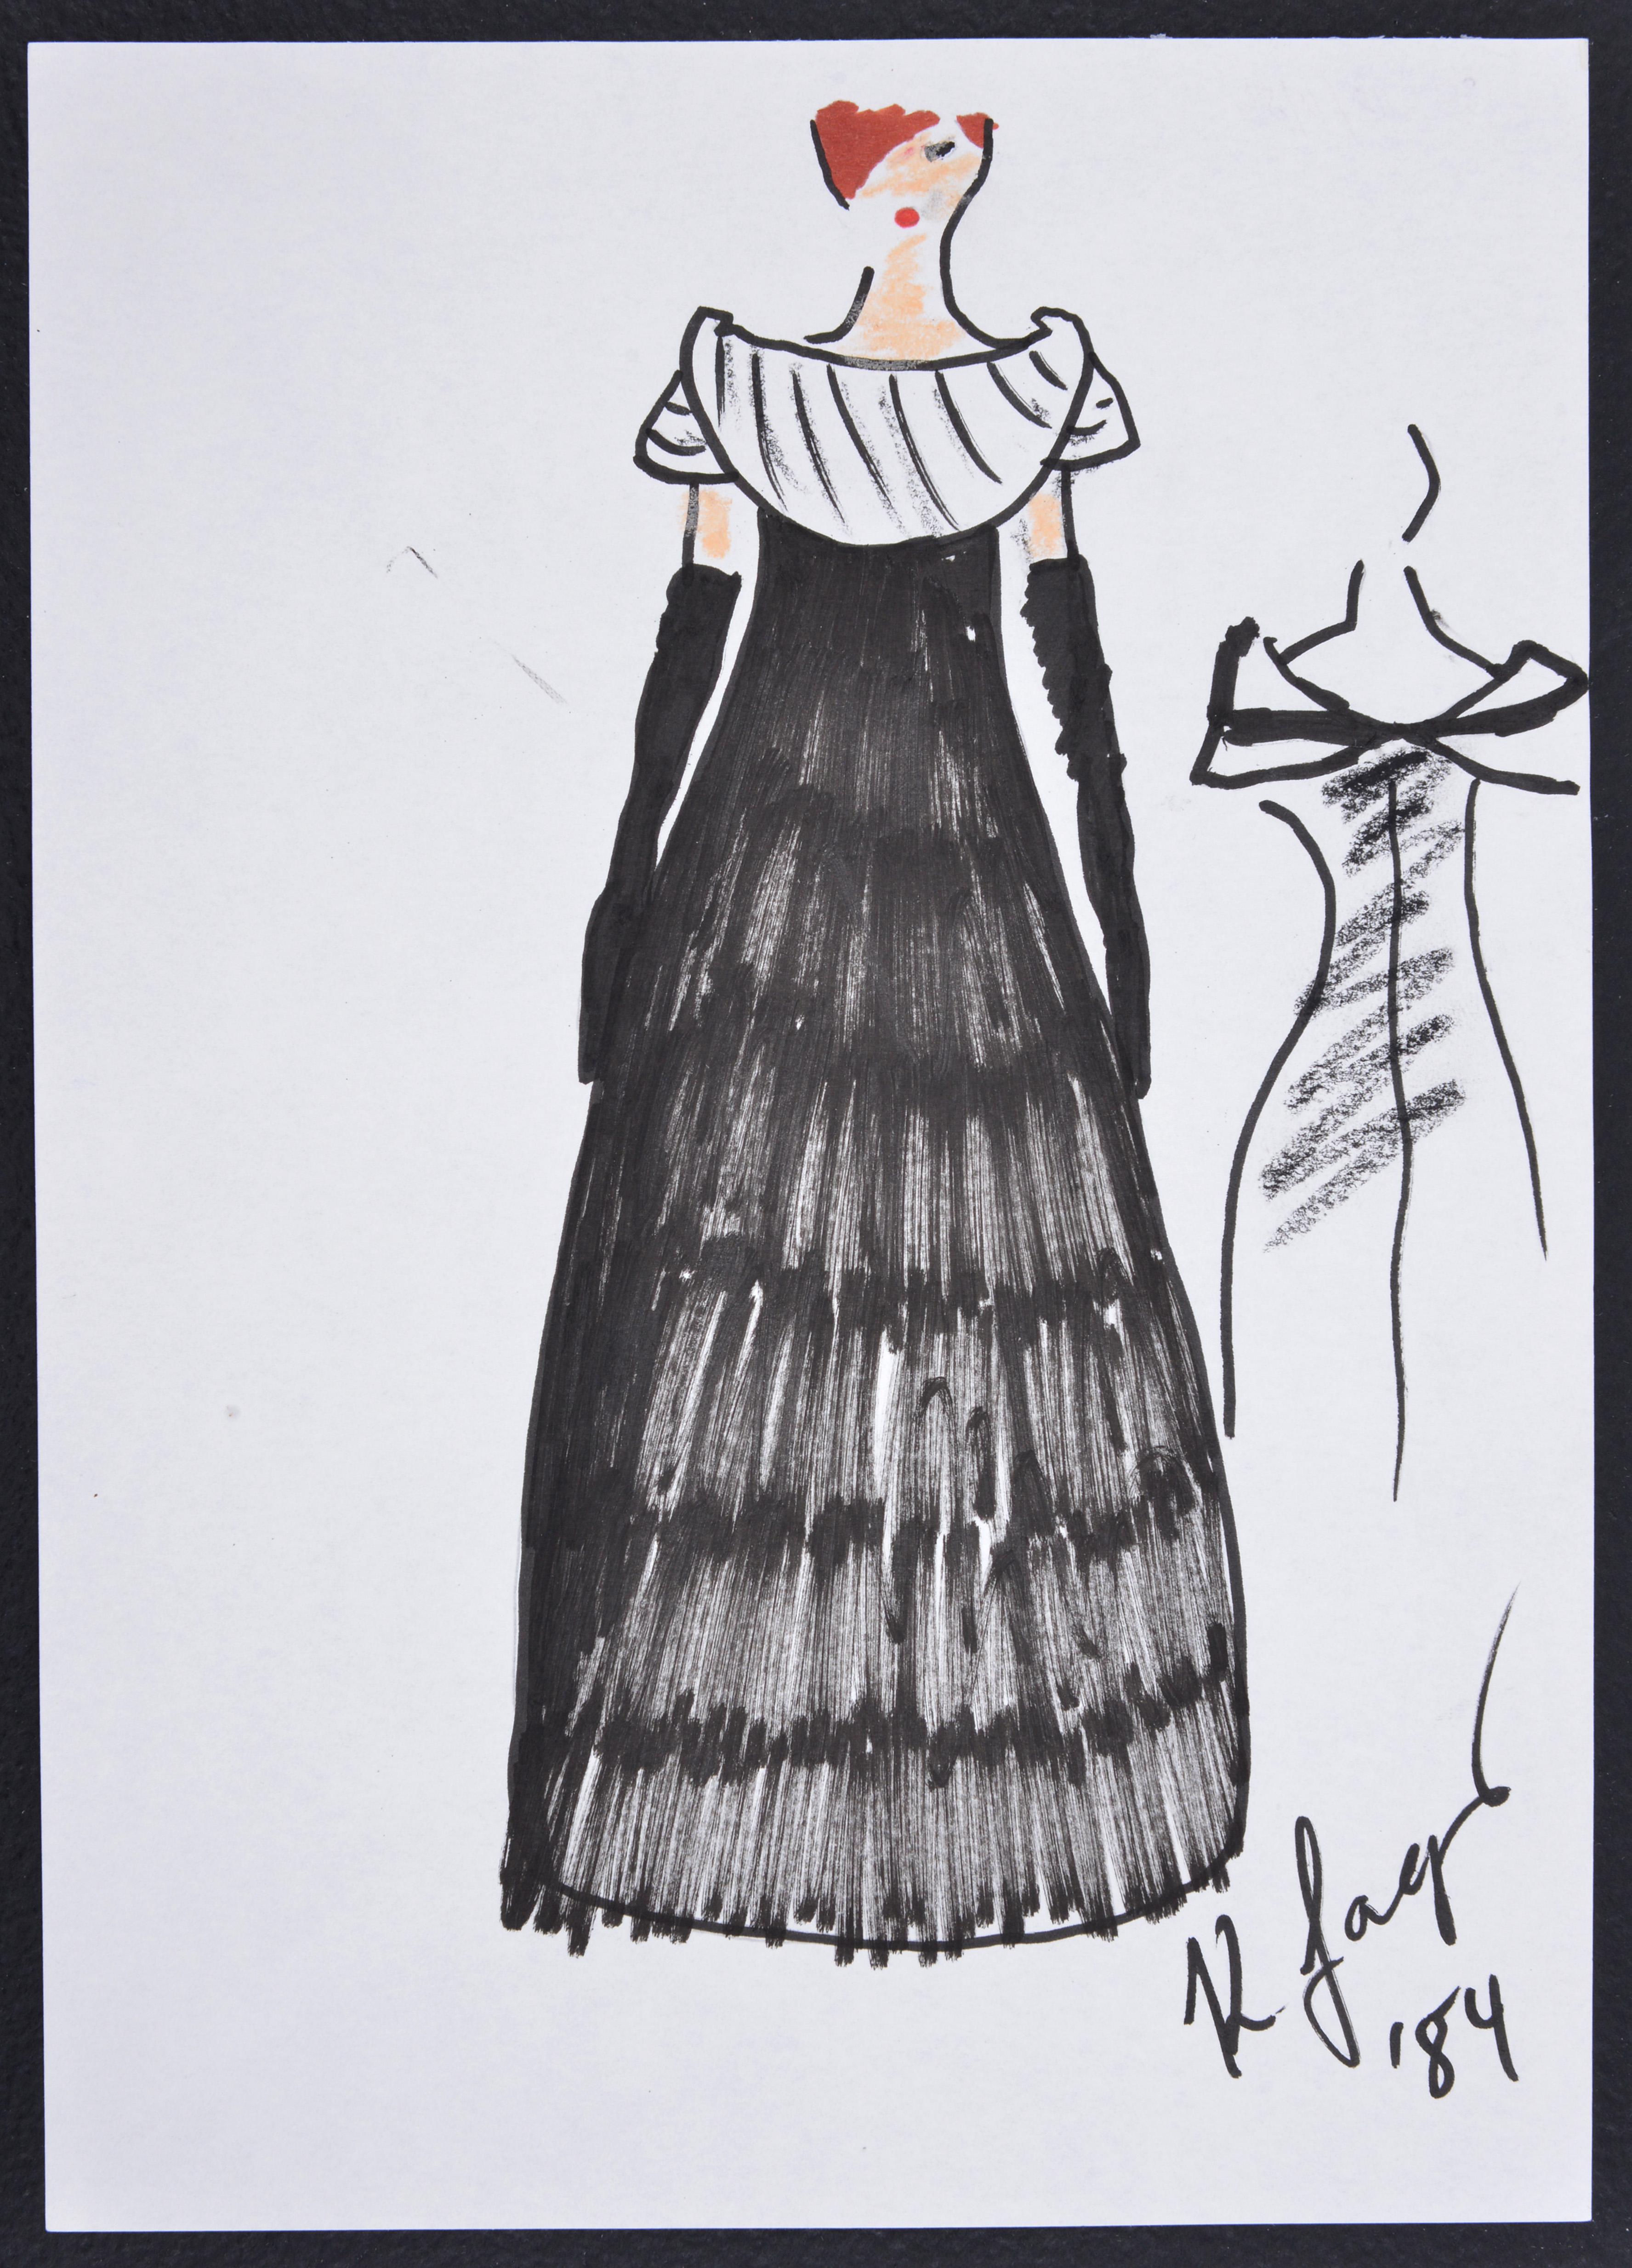 Artistics/Designer ; Fabricant : Karl Lagerfeld (allemand, 1933-2019)
Marquage(s) ; notes : signé, marquage(s) ; 1984
MATERIAL : techniques mixtes (encre, crayon, autres) sur papier
Dimensions (H, L, P) : 11.5 